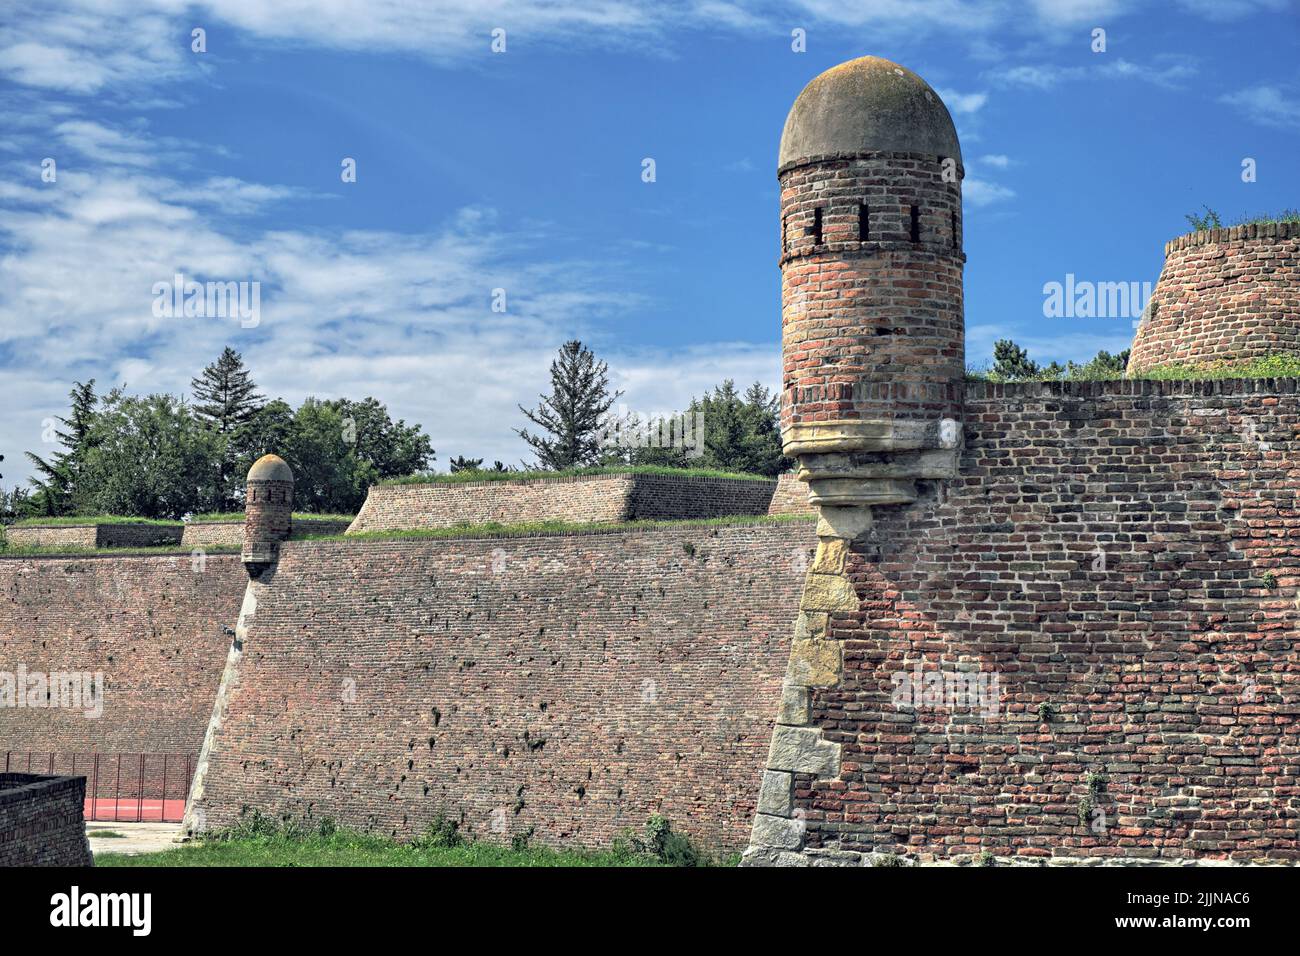 Torre de vigilancia de vedette y muro de ladrillo de la fortaleza de Kalemegdan en Belgrado, Serbia Foto de stock